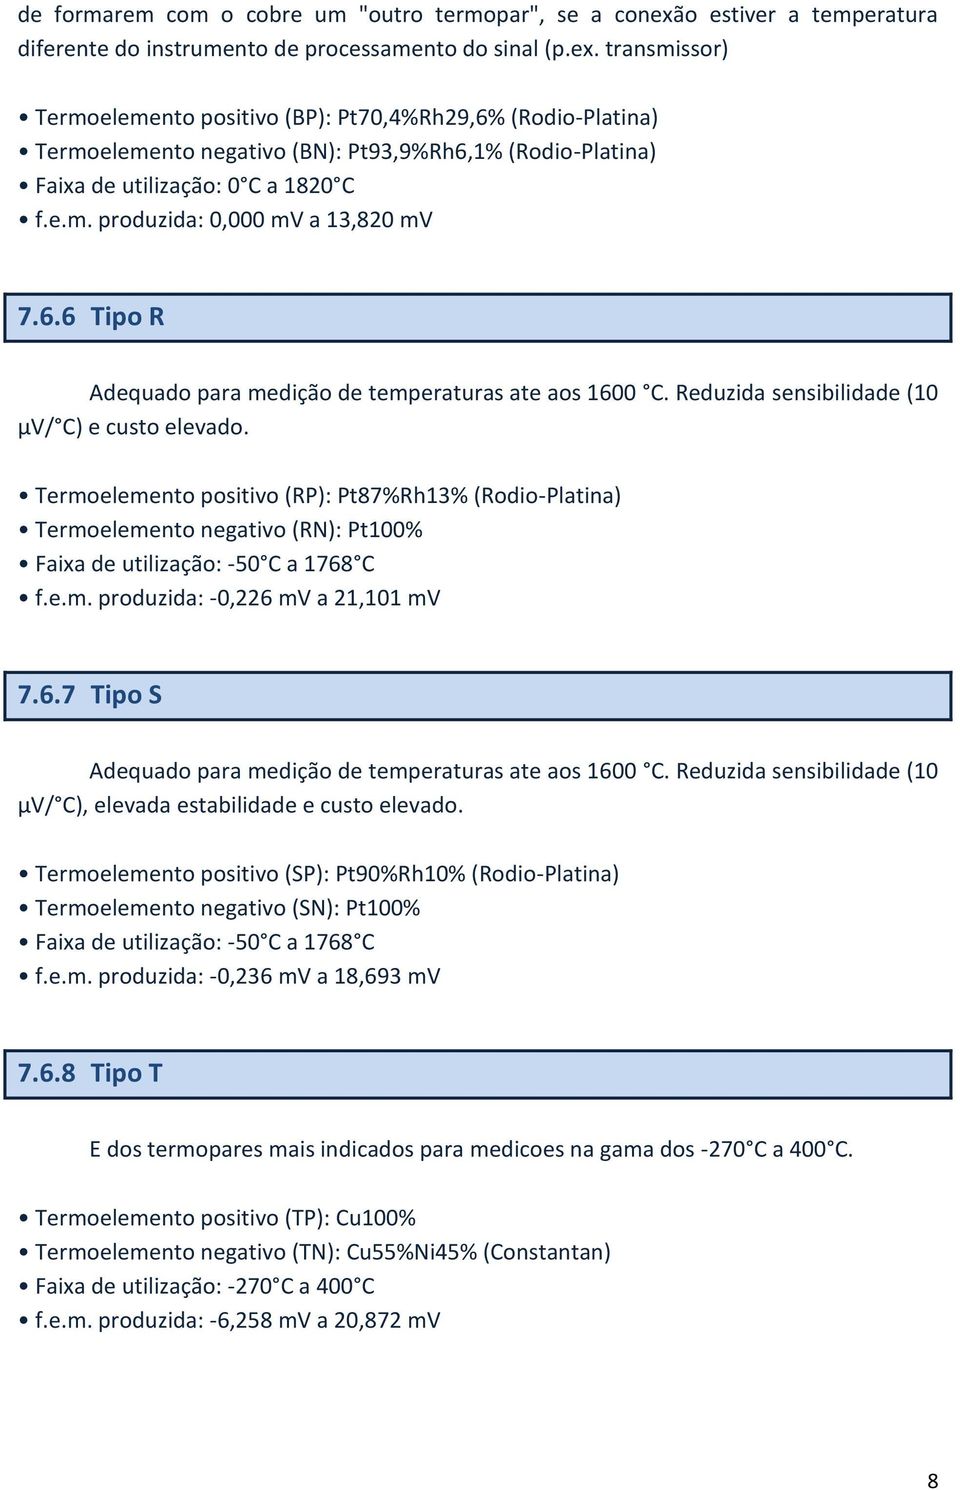 transmissor) Termoelemento positivo (BP): Pt70,4%Rh29,6% (Rodio-Platina) Termoelemento negativo (BN): Pt93,9%Rh6,1% (Rodio-Platina) Faixa de utilização: 0 C a 1820 C f.e.m. produzida: 0,000 mv a 13,820 mv 7.